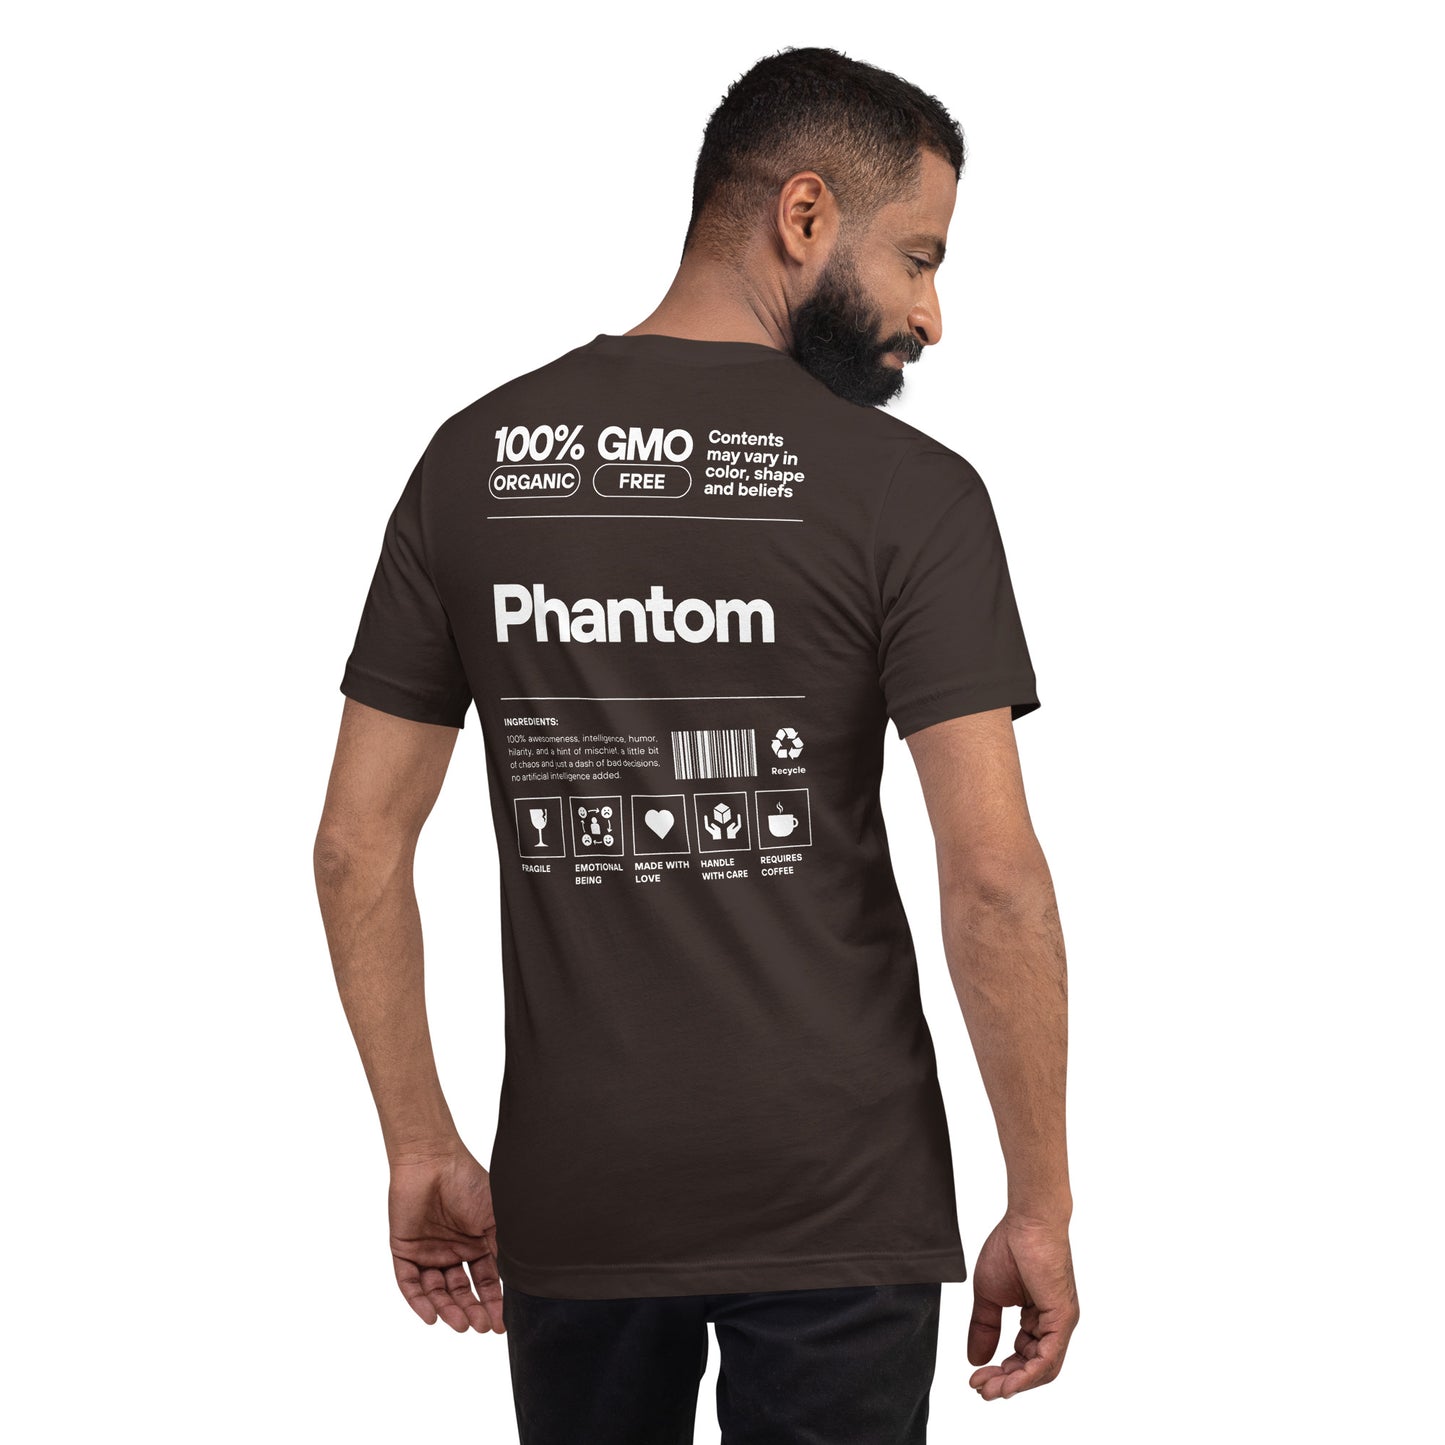 Phantom Ingredients t-shirt